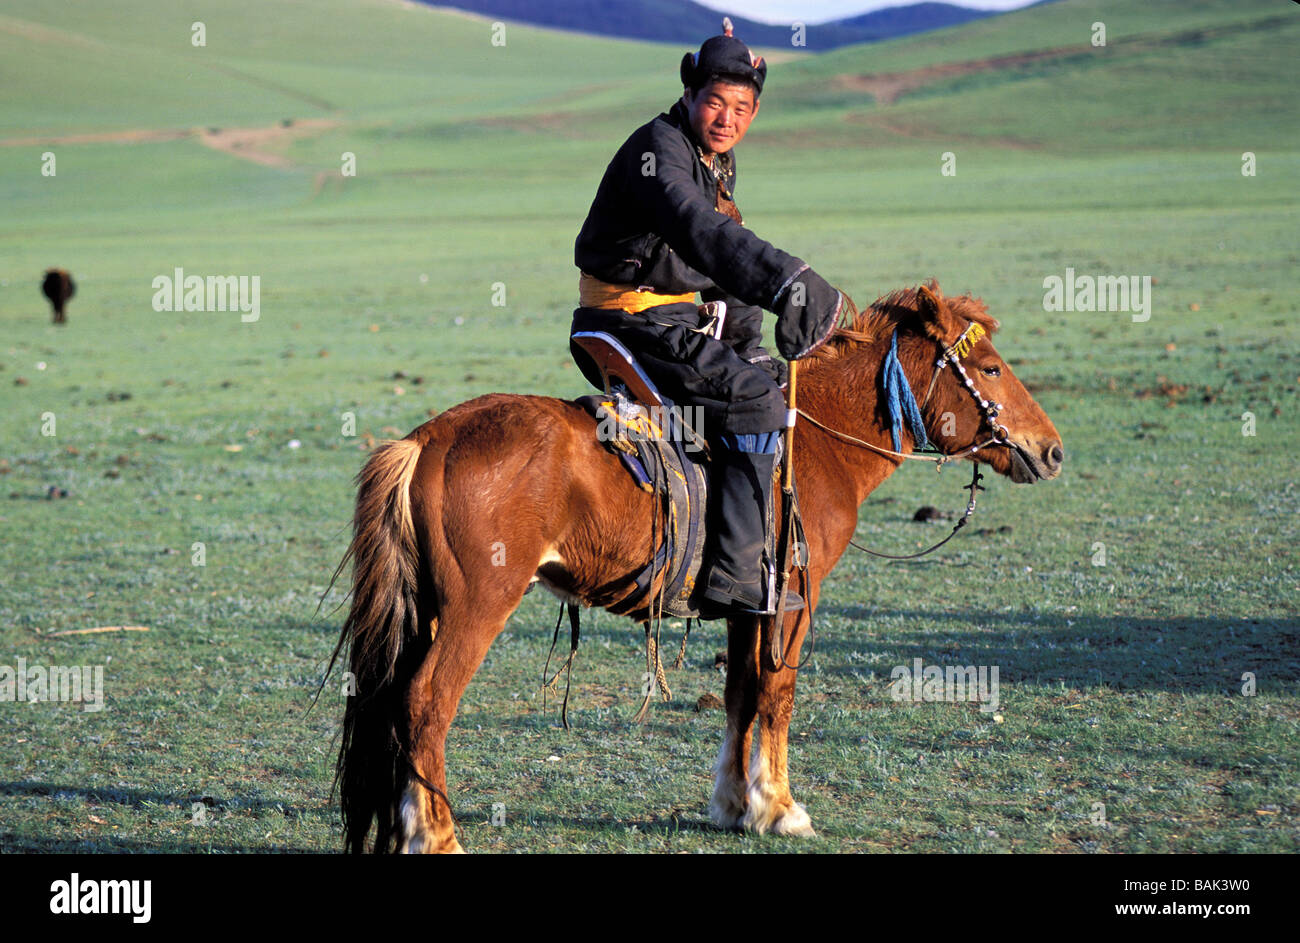 Mongolia, Arkhangai province, nomadic Stock Photo